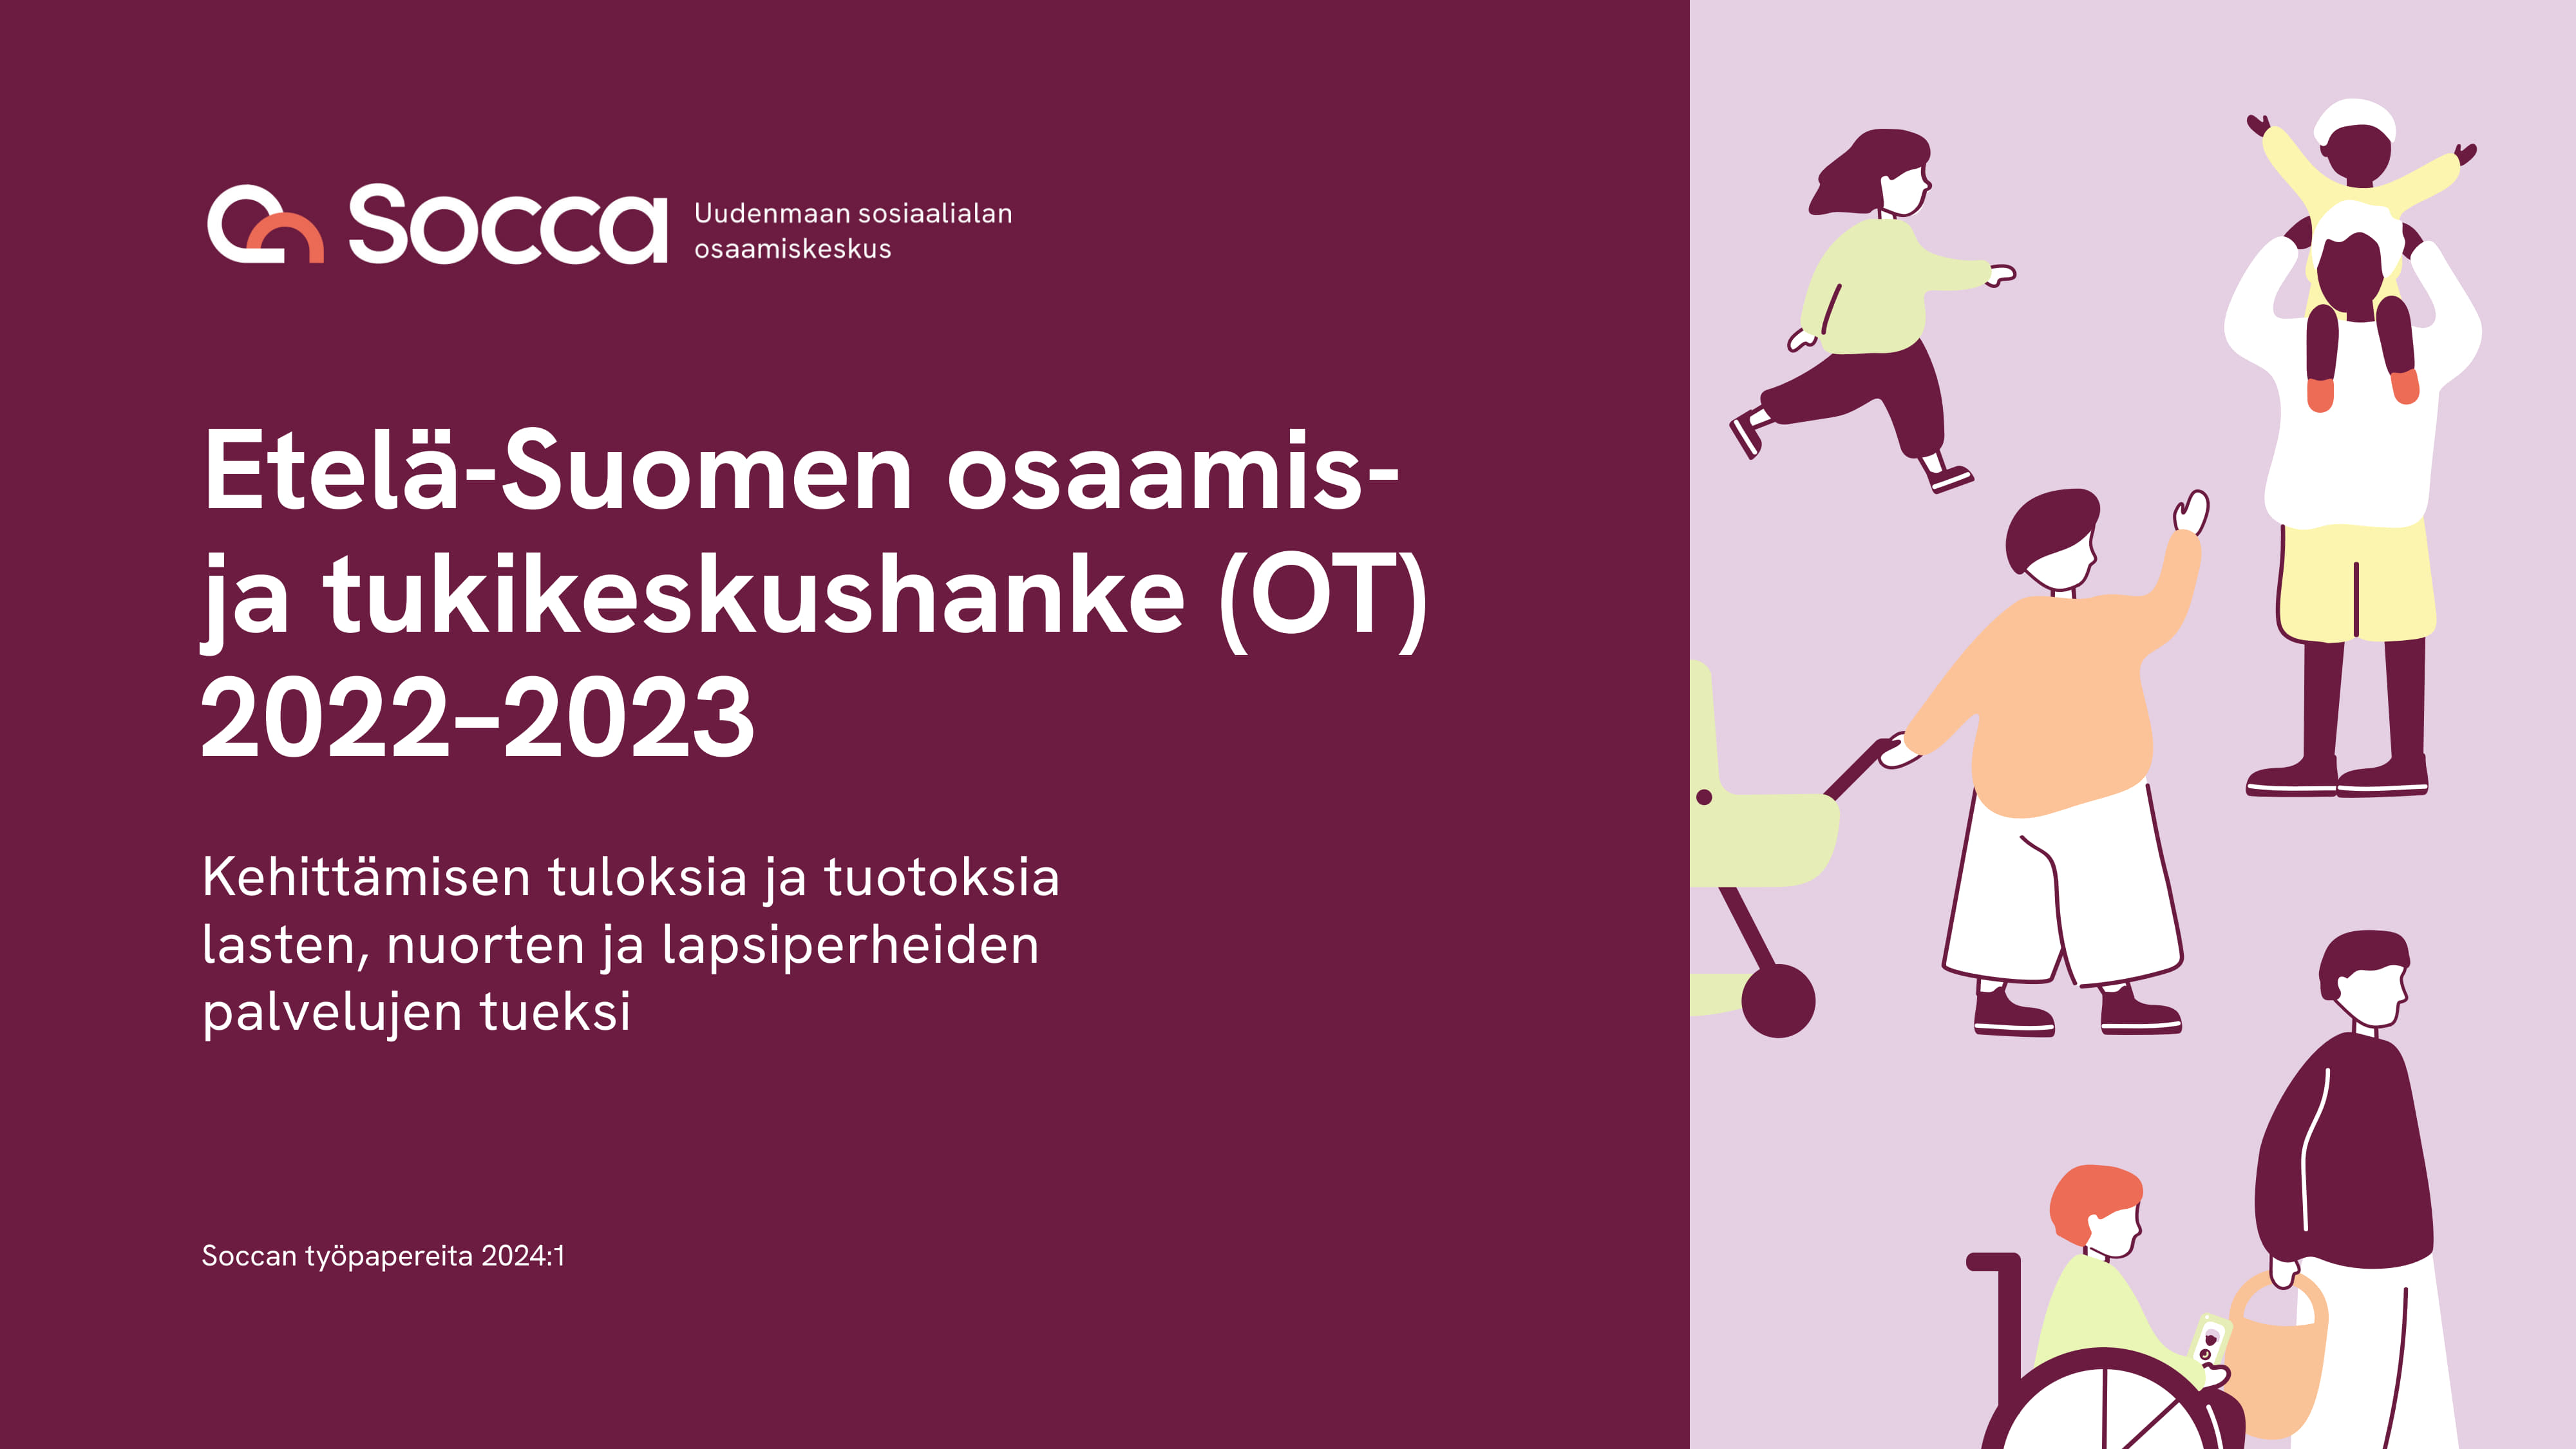 Etelä-Suomen OT-keskushankkeen 2022-2023 raportti.